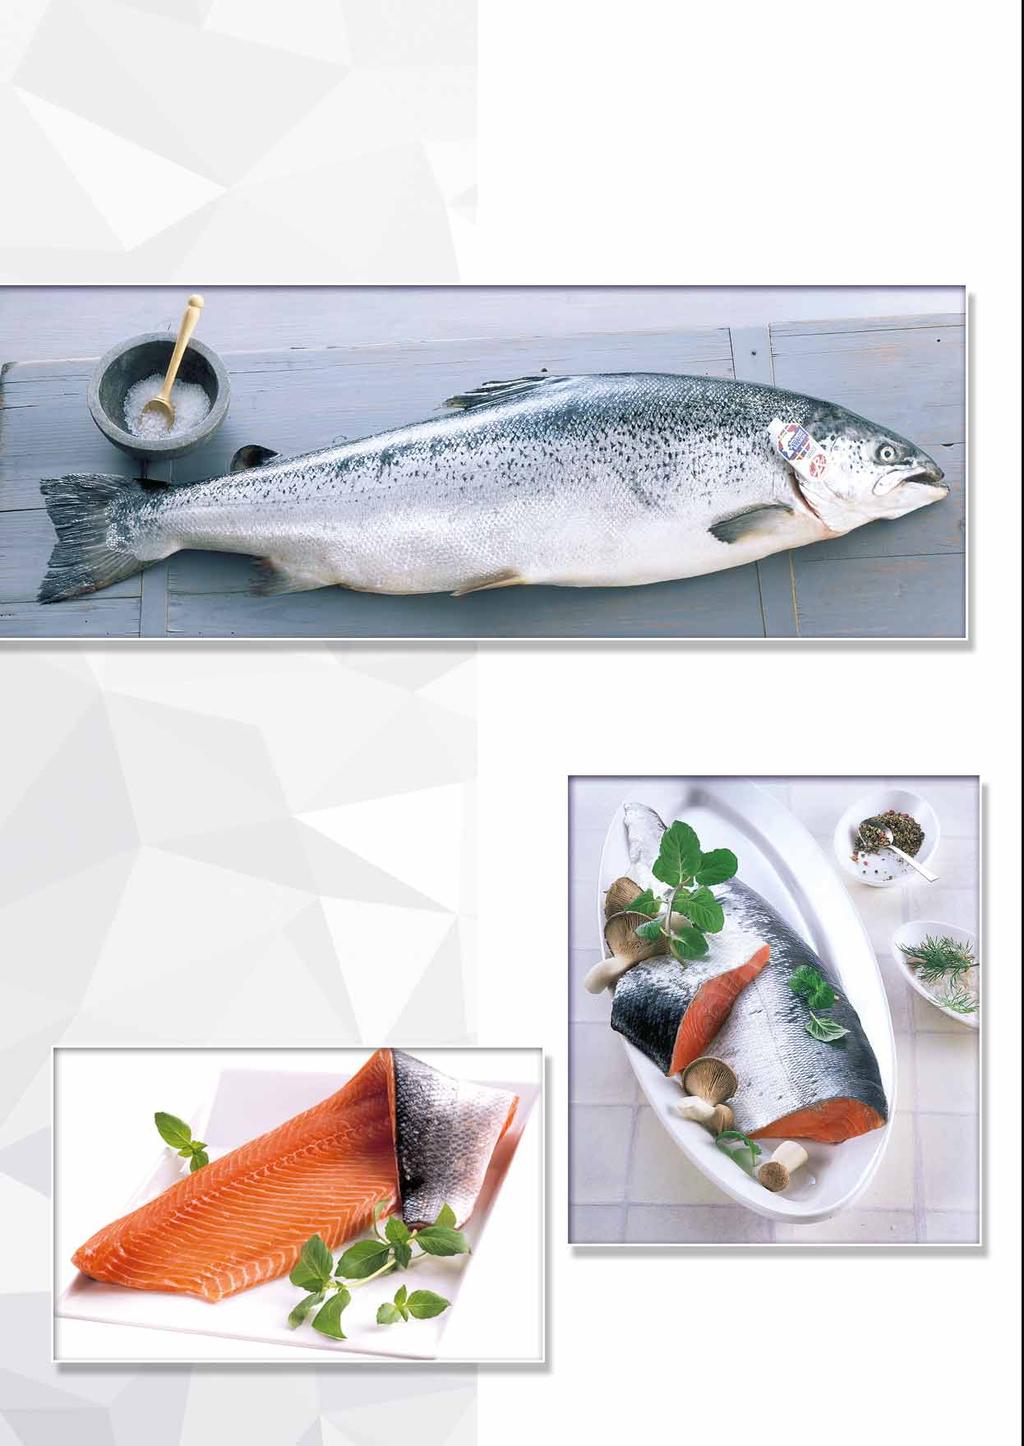 TRANSGOURMET SEAFOOD Label Rouge nowa jakość łososia Label Rouge jest prestiżowym znakiem jakości przyznawanym przez francuskie Ministerstwo Rolnictwa dla produktów wykazujących najwyższą jakość i